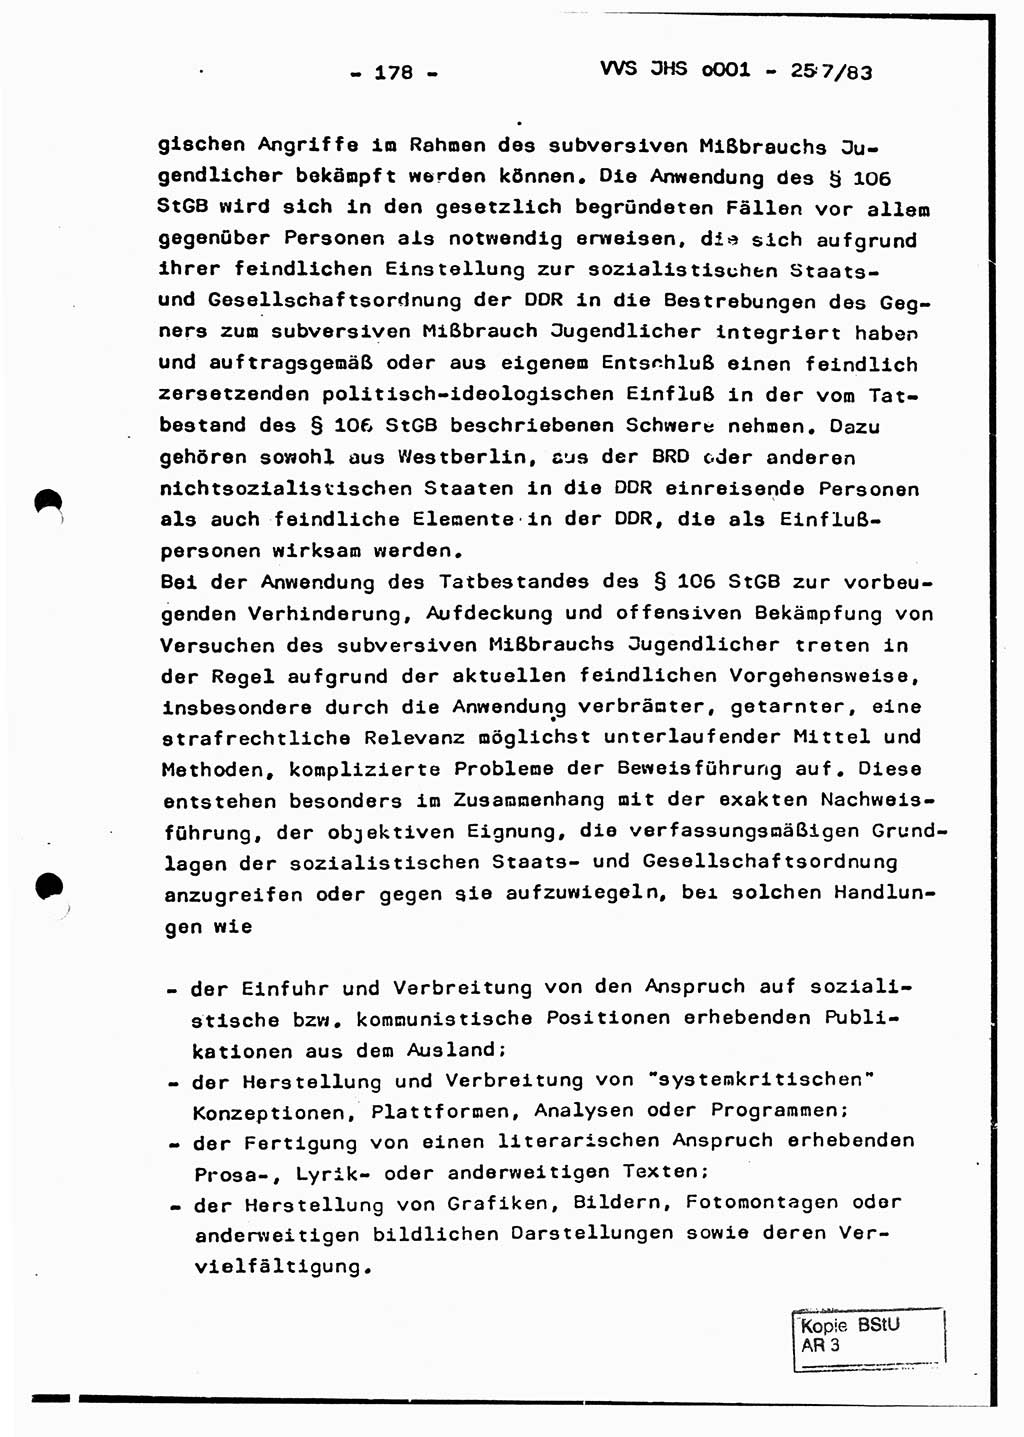 Dissertation, Oberst Helmut Lubas (BV Mdg.), Oberstleutnant Manfred Eschberger (HA IX), Oberleutnant Hans-Jürgen Ludwig (JHS), Ministerium für Staatssicherheit (MfS) [Deutsche Demokratische Republik (DDR)], Juristische Hochschule (JHS), Vertrauliche Verschlußsache (VVS) o001-257/83, Potsdam 1983, Seite 178 (Diss. MfS DDR JHS VVS o001-257/83 1983, S. 178)